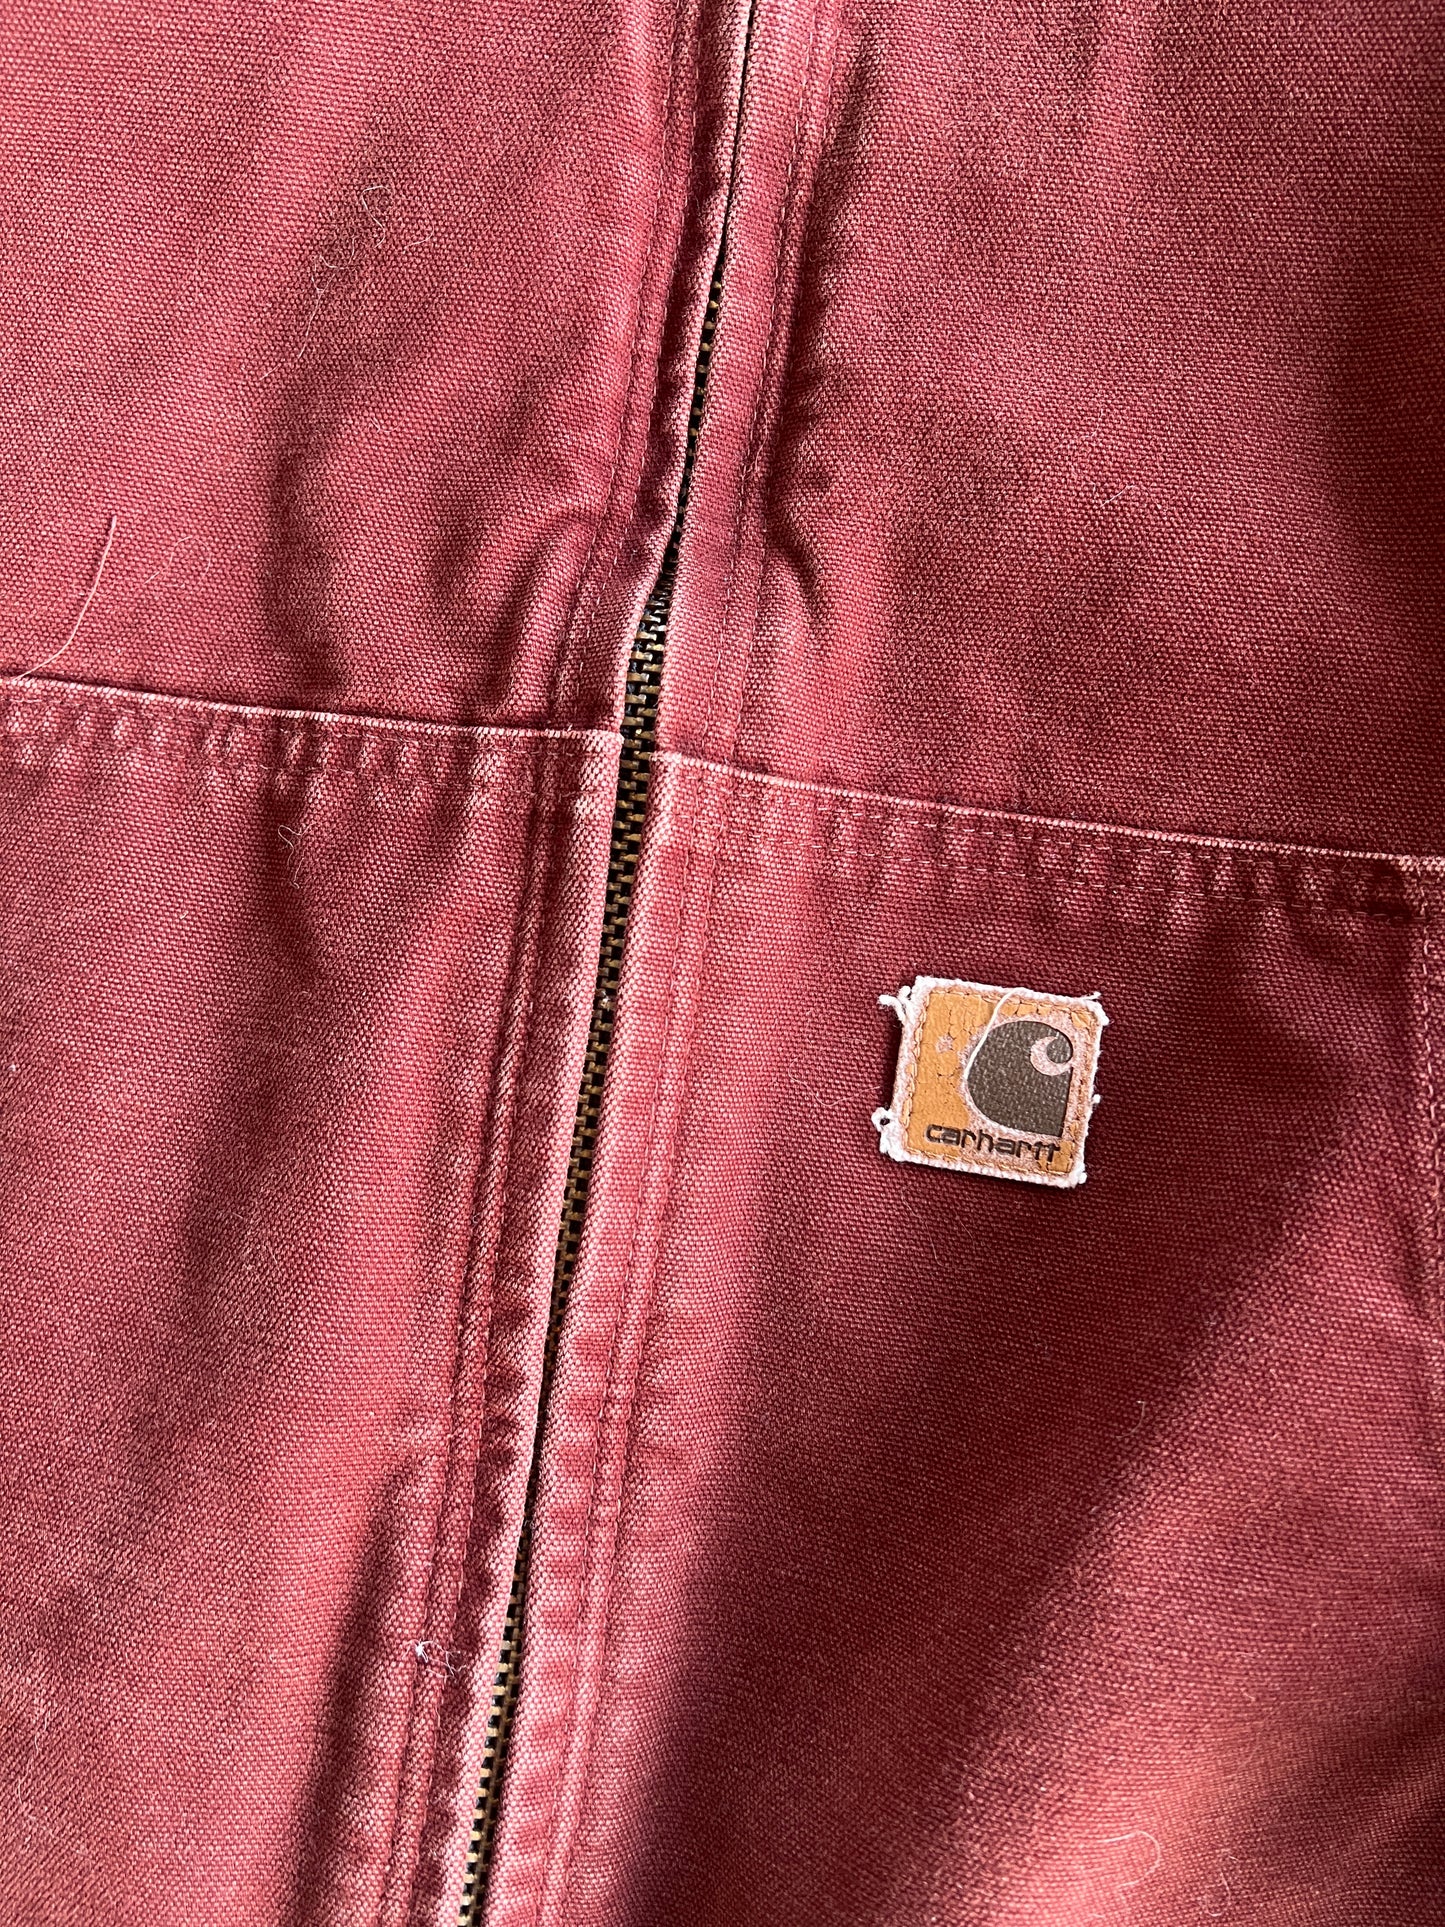 Vintage Amber Carhartt Jacket - XL